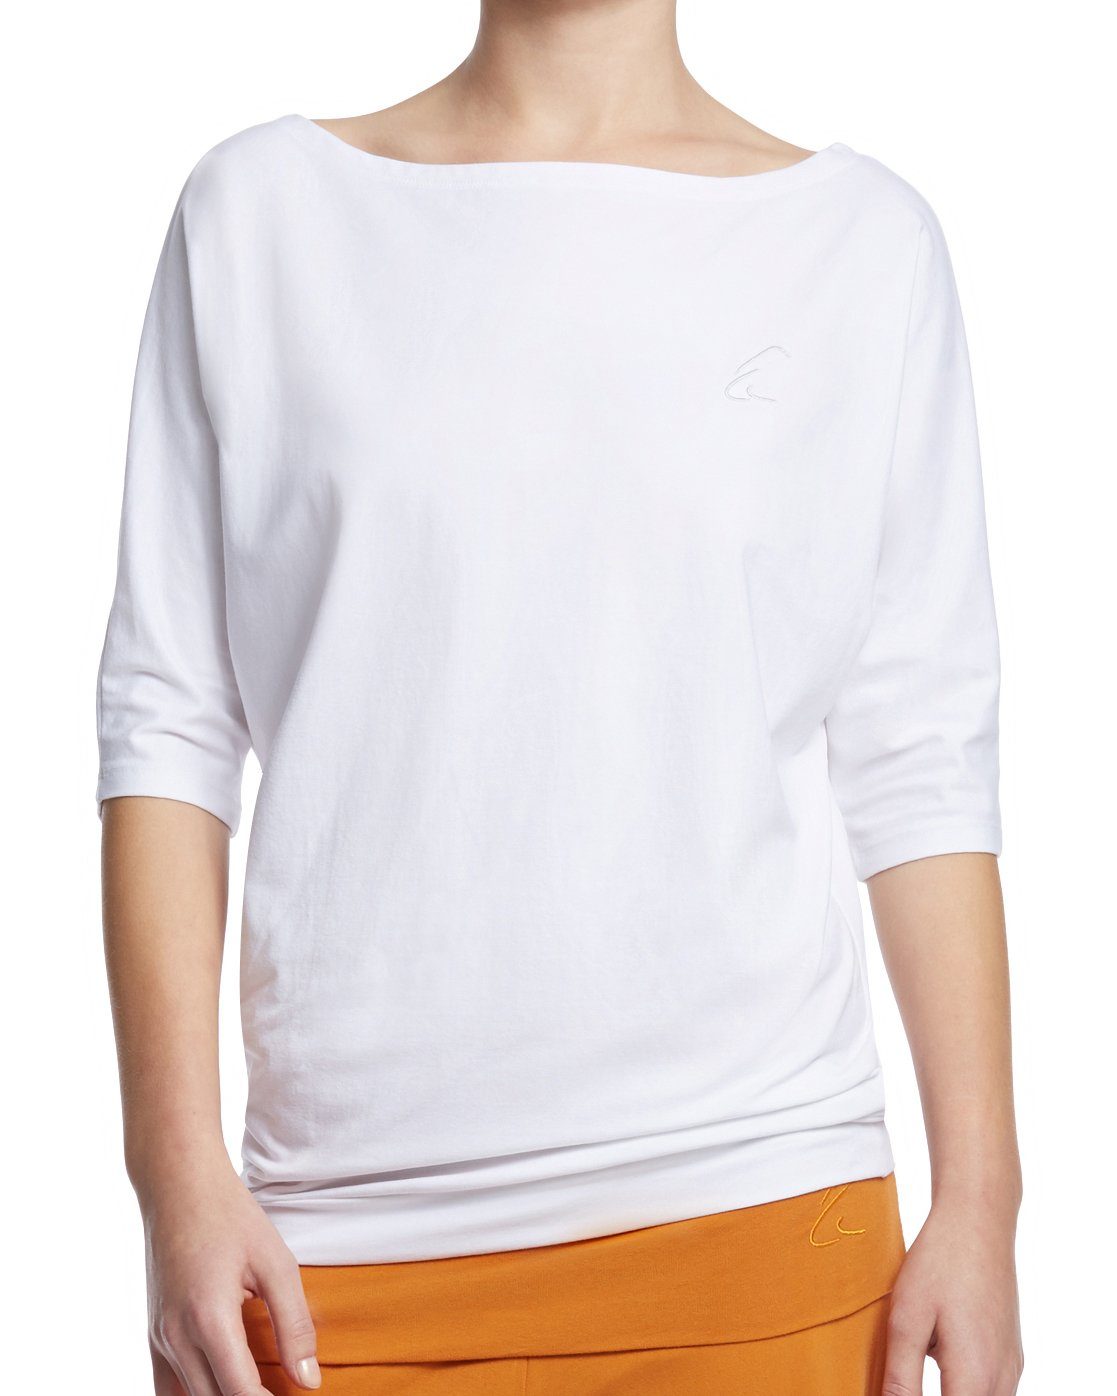 ESPARTO Yogashirt Halbarmshirt Sadaa in Bio-Baumwolle Wohlfühlshirt mit breitem Schulterausschnitt (U-Boot-Ausschnitt) Schneeweiß